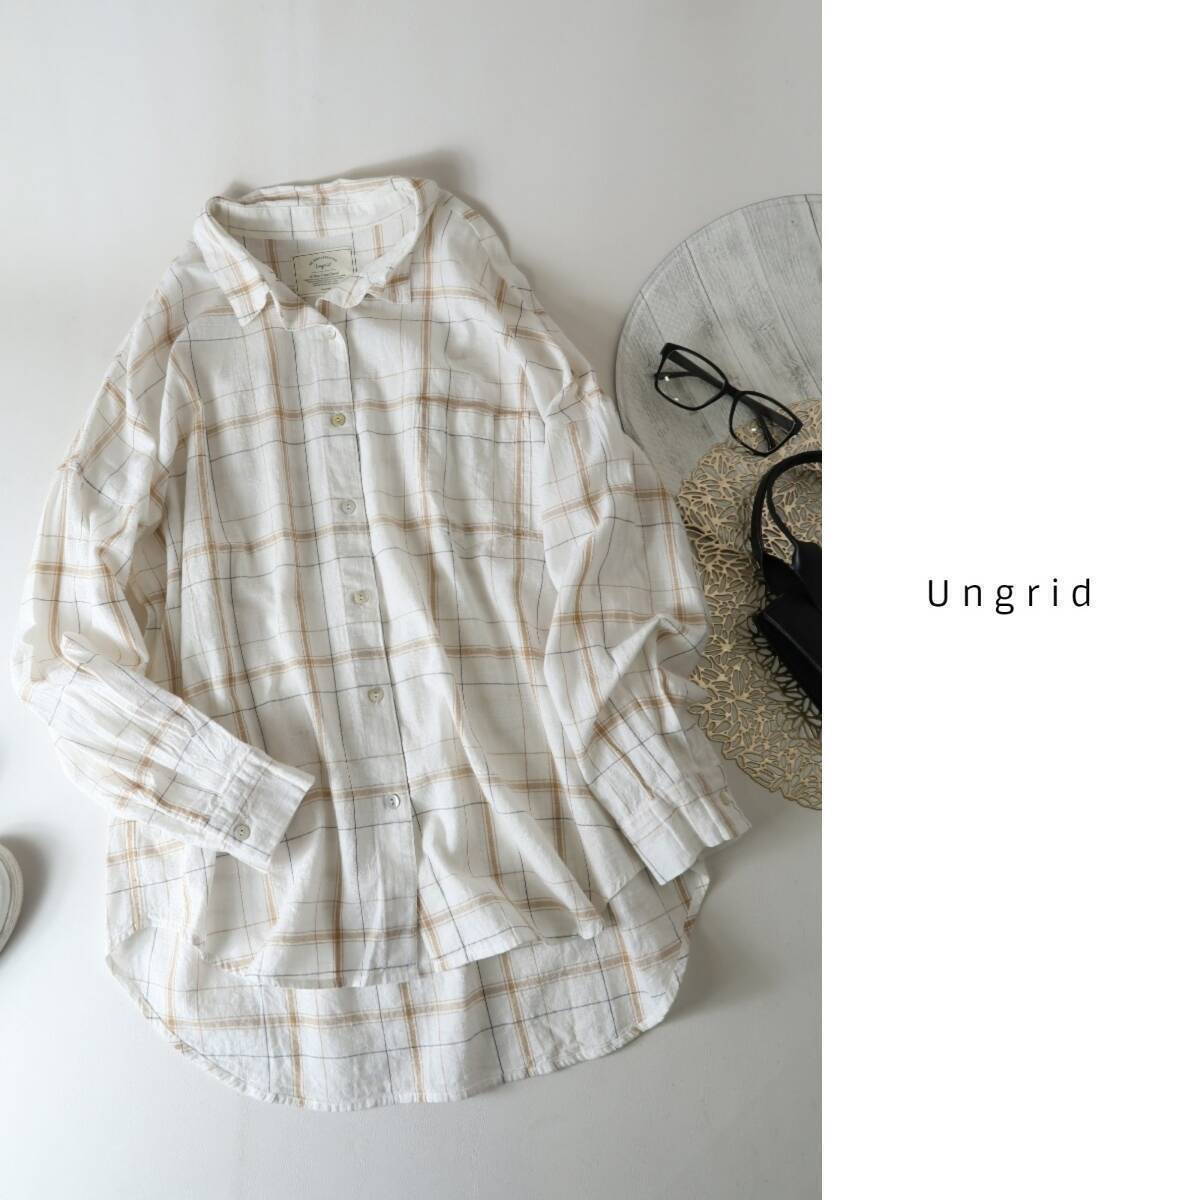  Ungrid Ungrid*... хлопок 100% большой Roo z проверка рубашка свободный размер *A-O 1056